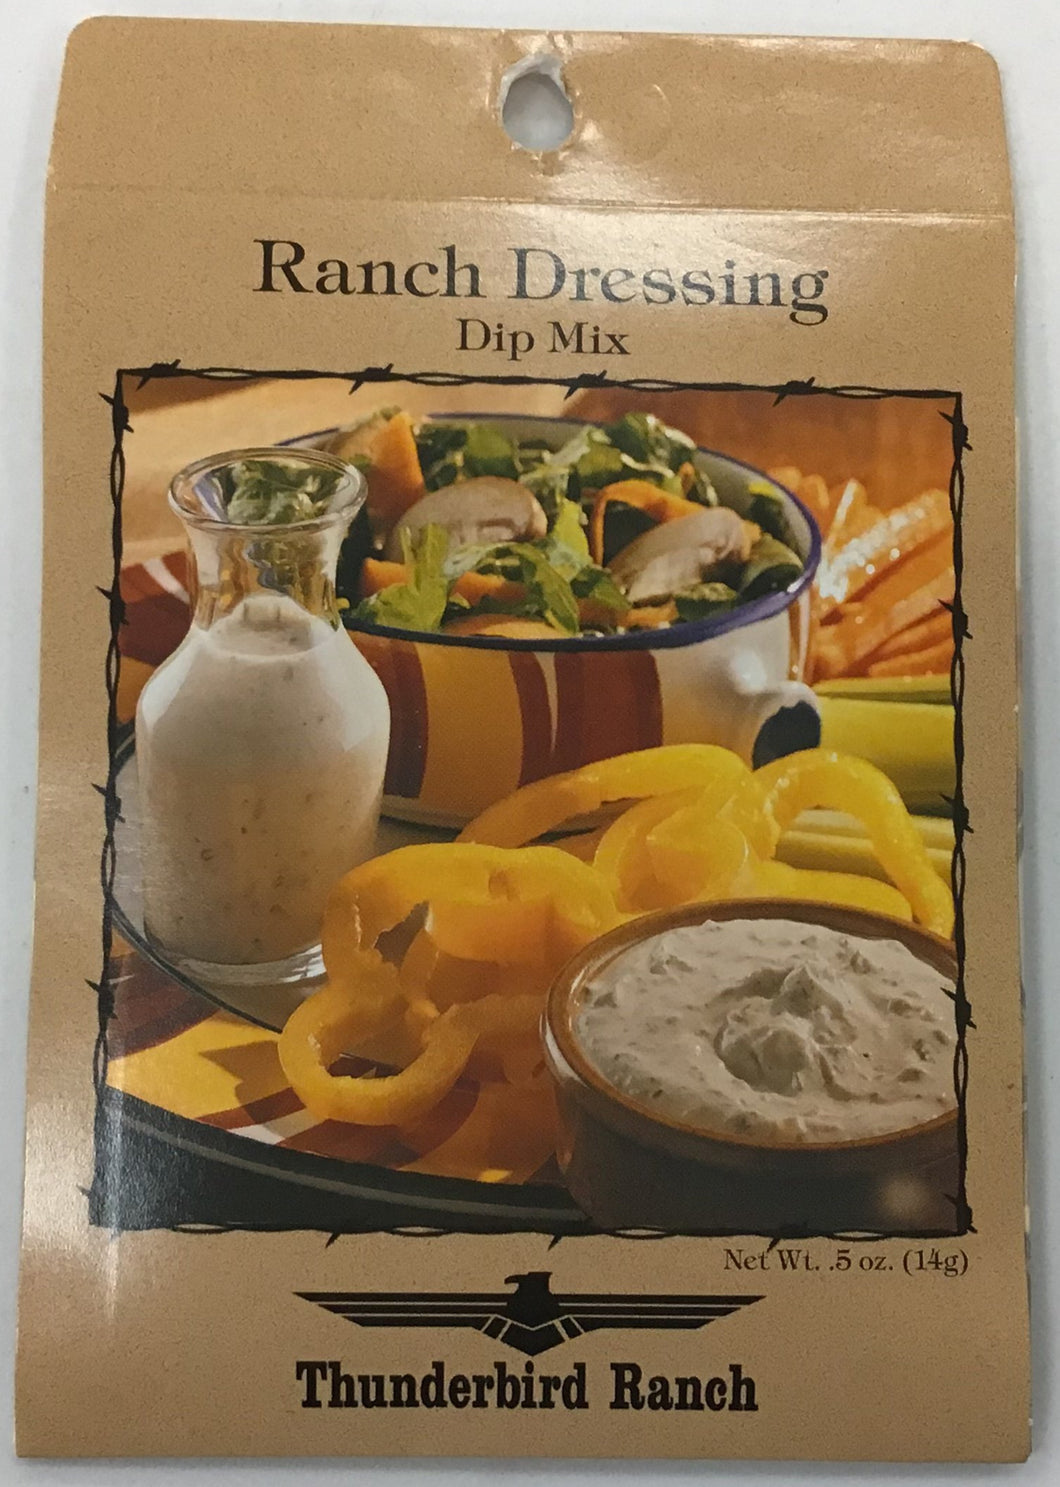 Dakota Seasonings Ranch Dressing Dip Mix